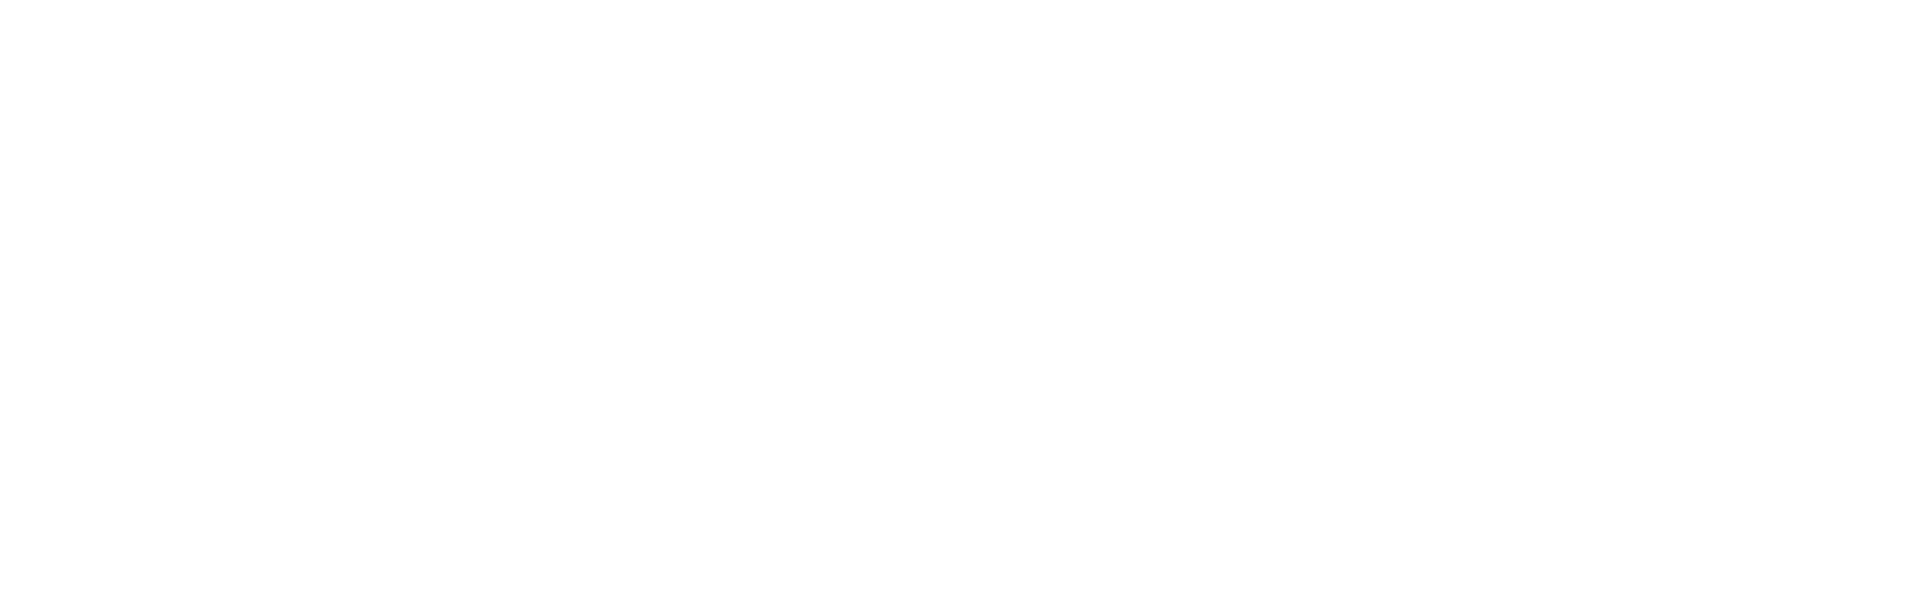 Seek Logo - Sales CRM Platform for B2B Teams | SalesSeek